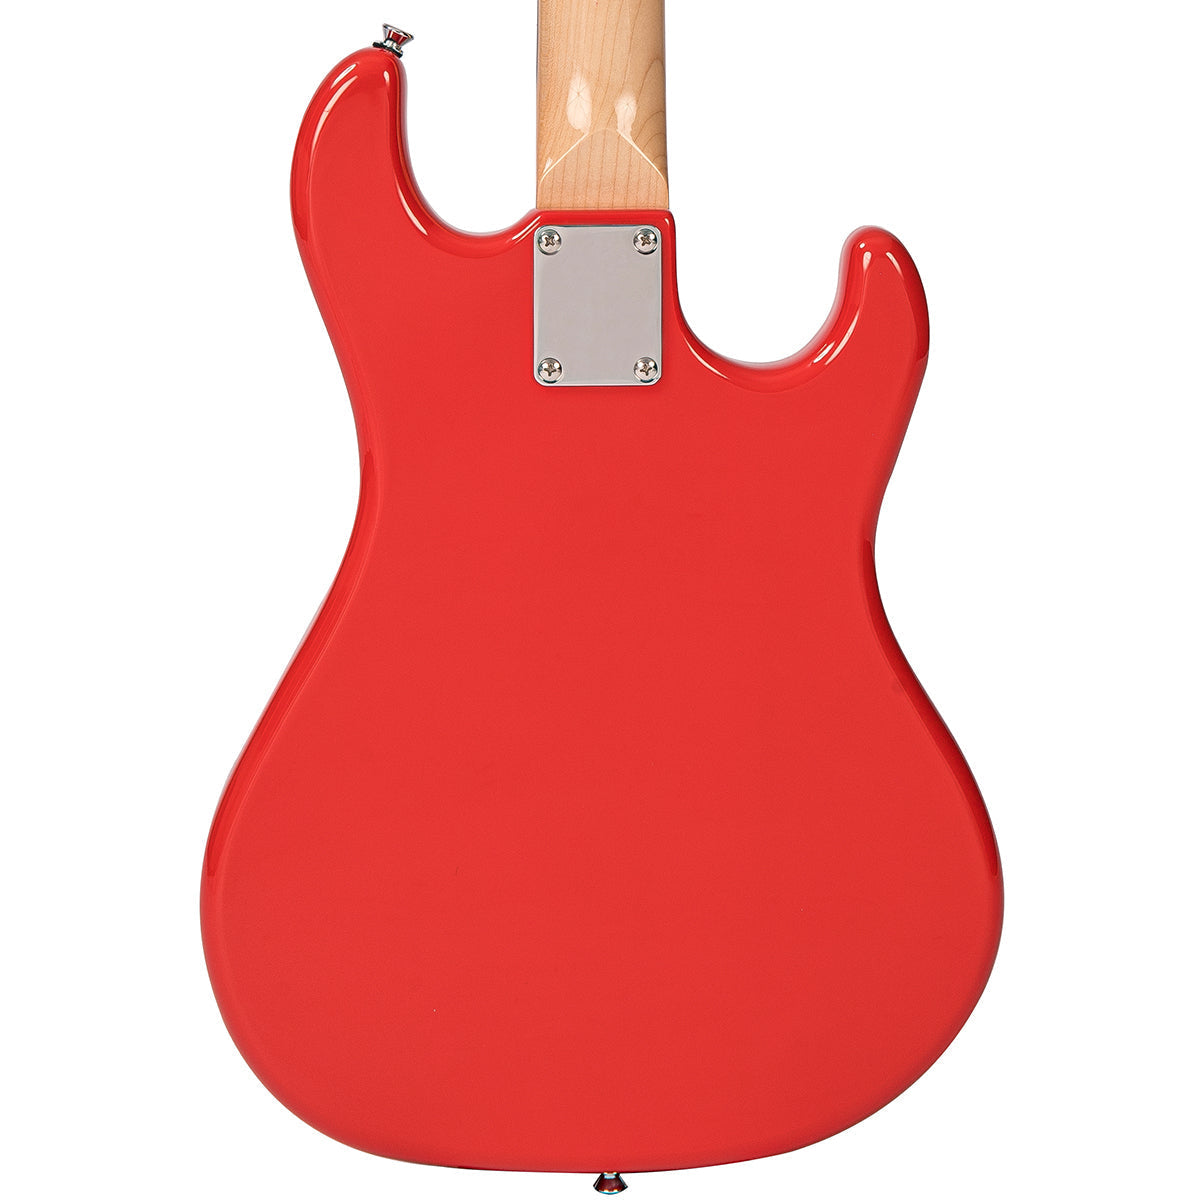 Rapier 33 Electric Guitar ~ Left Handed Fiesta Red, Electric Guitar for sale at Richards Guitars.